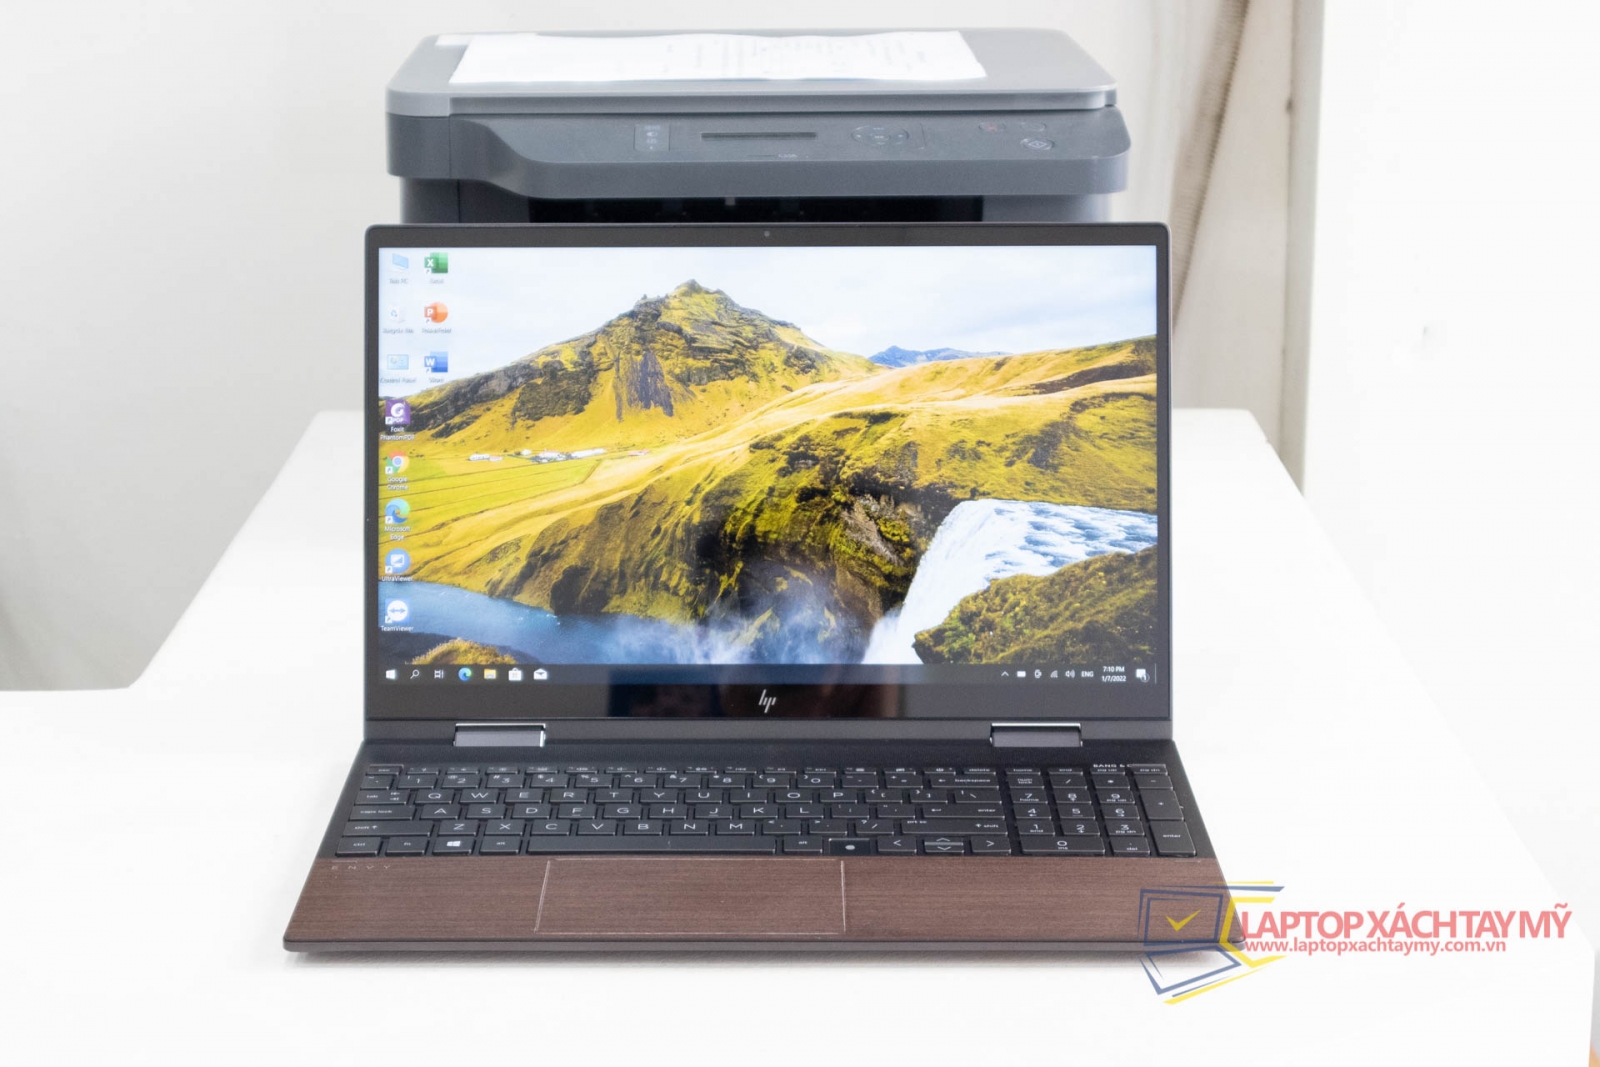 HP Envy Laptop 15 x360 Intel i5 1035G1, Ram 16G, SSD 512G, Cảm Ứng